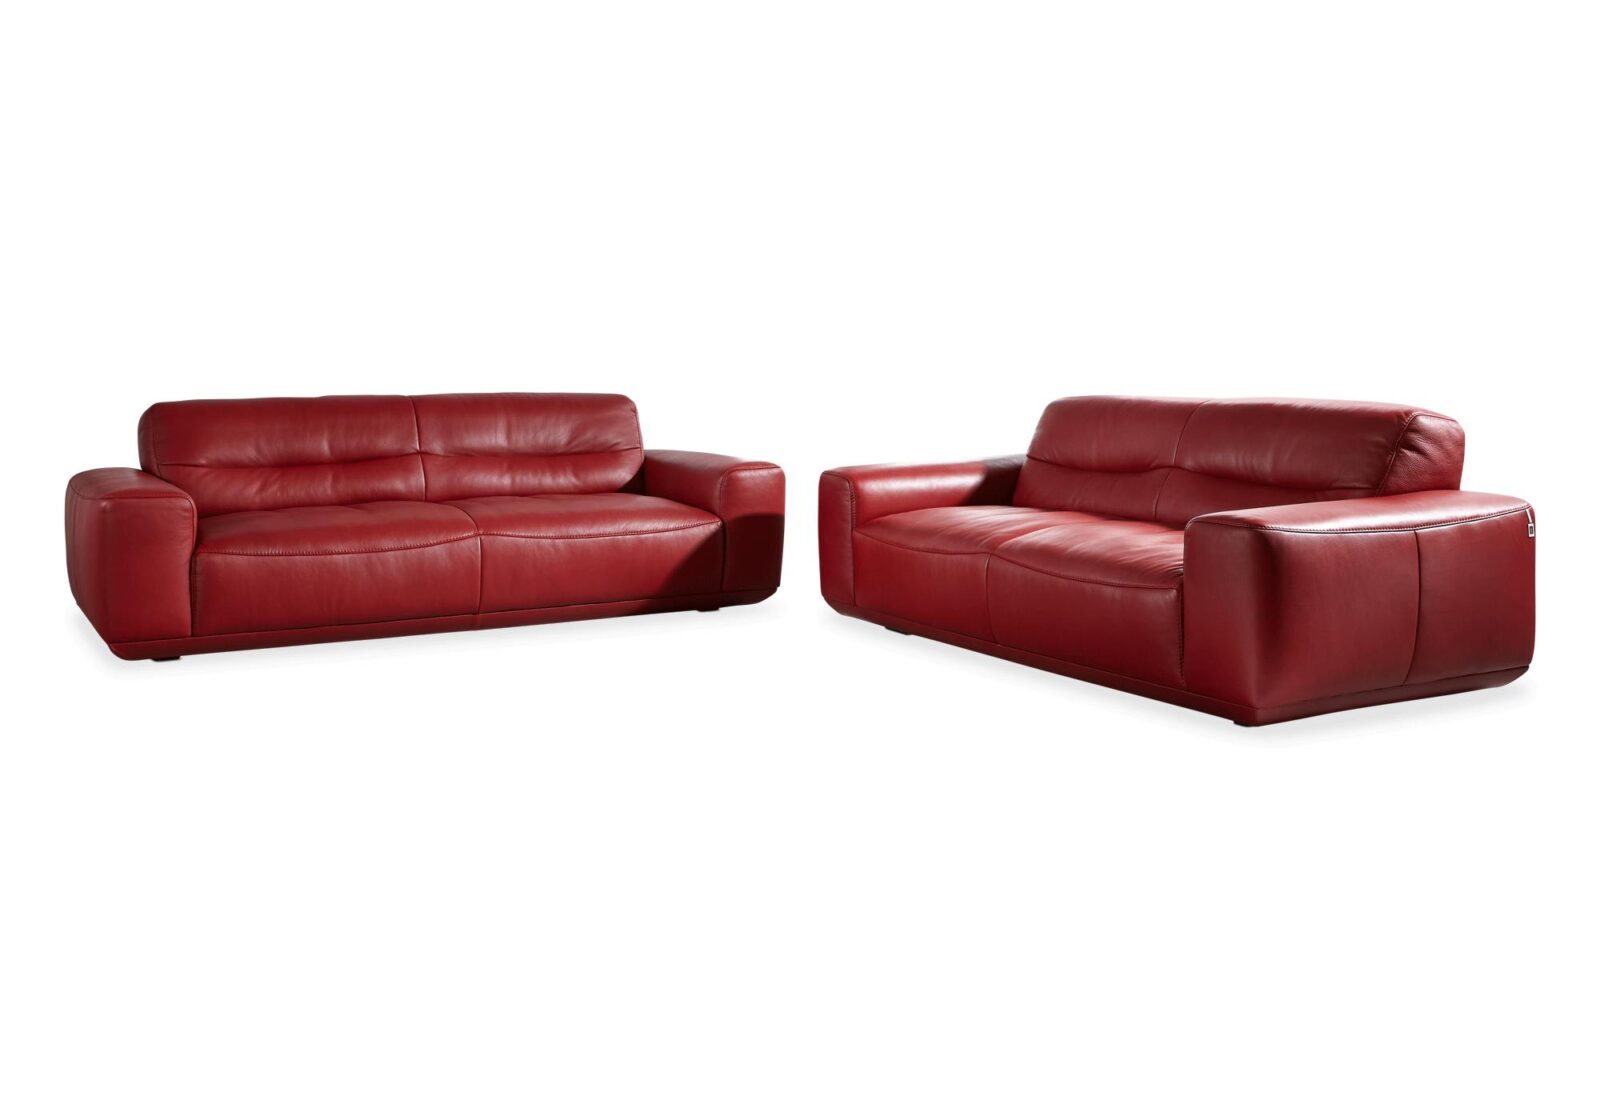 Polstergruppe Jodie mit 2er und 2.5er Sofa. Bezug: Leder. Farbe: Kaminrot. Erhältlich bei Möbel Gallati.